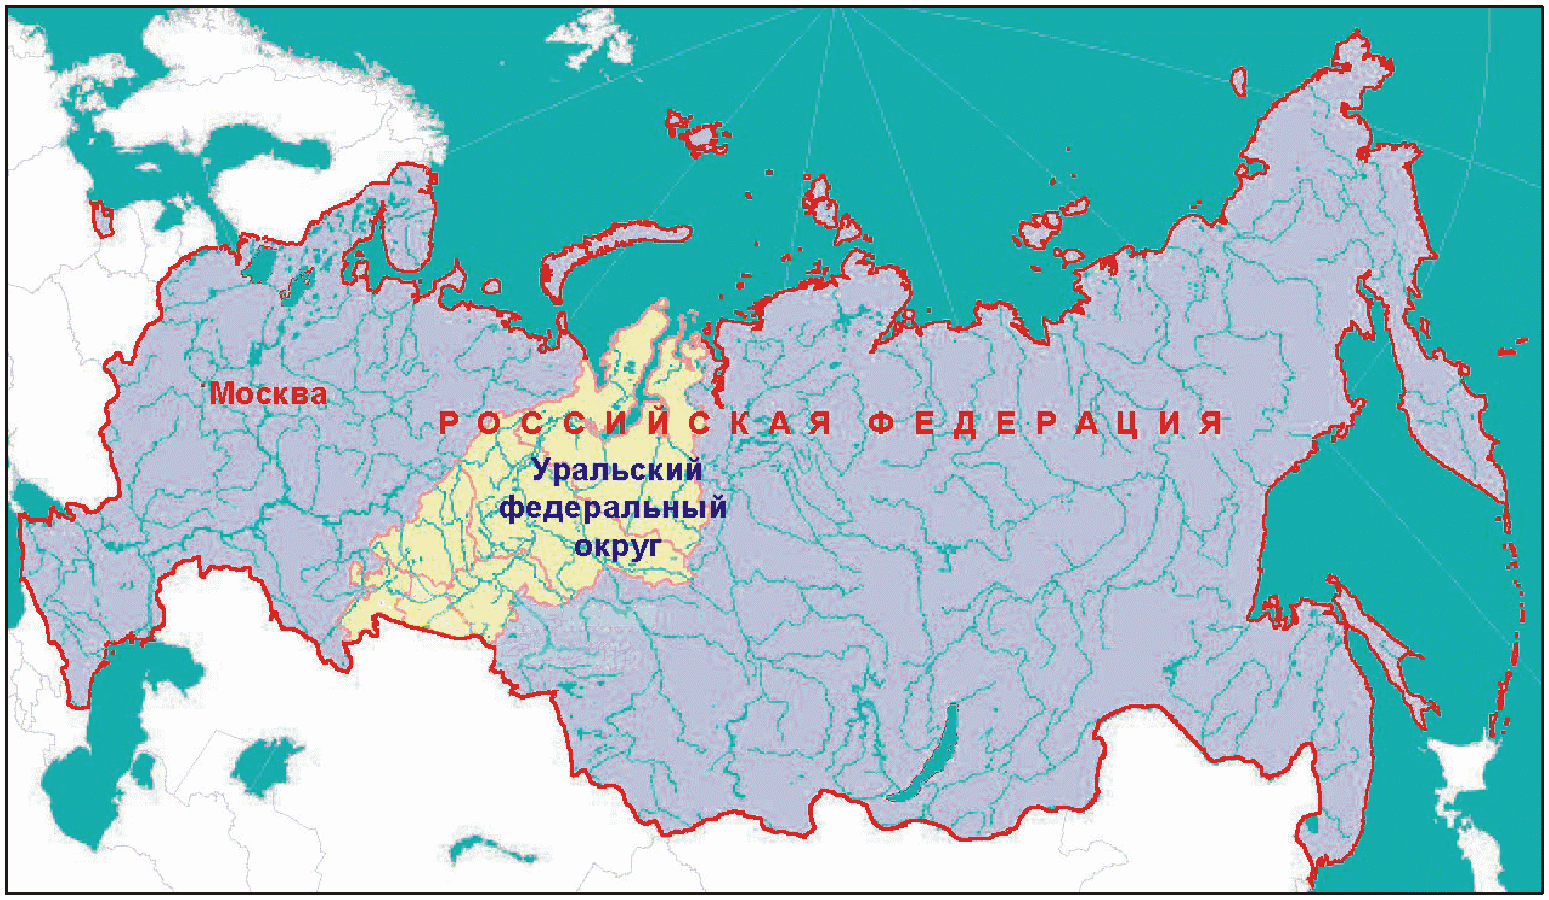 134535 html m106cd78b - Объединение с размахом: Урал и Сибирь станут агломерациями мирового уровня